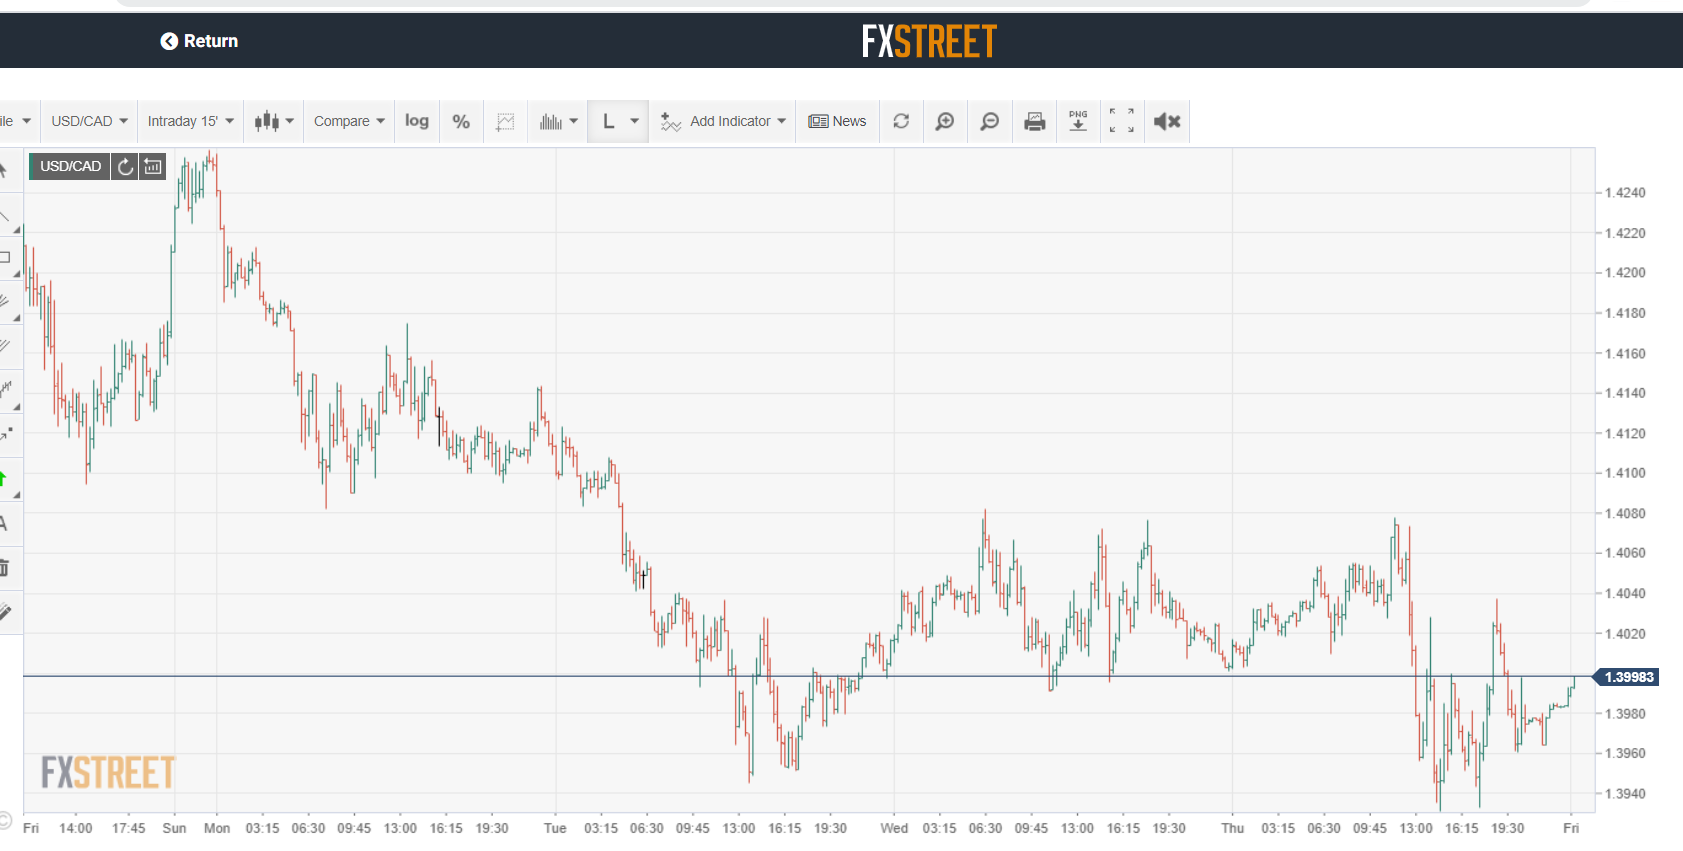 FX Street USD CAD - 15 min chart - 10 April 2020